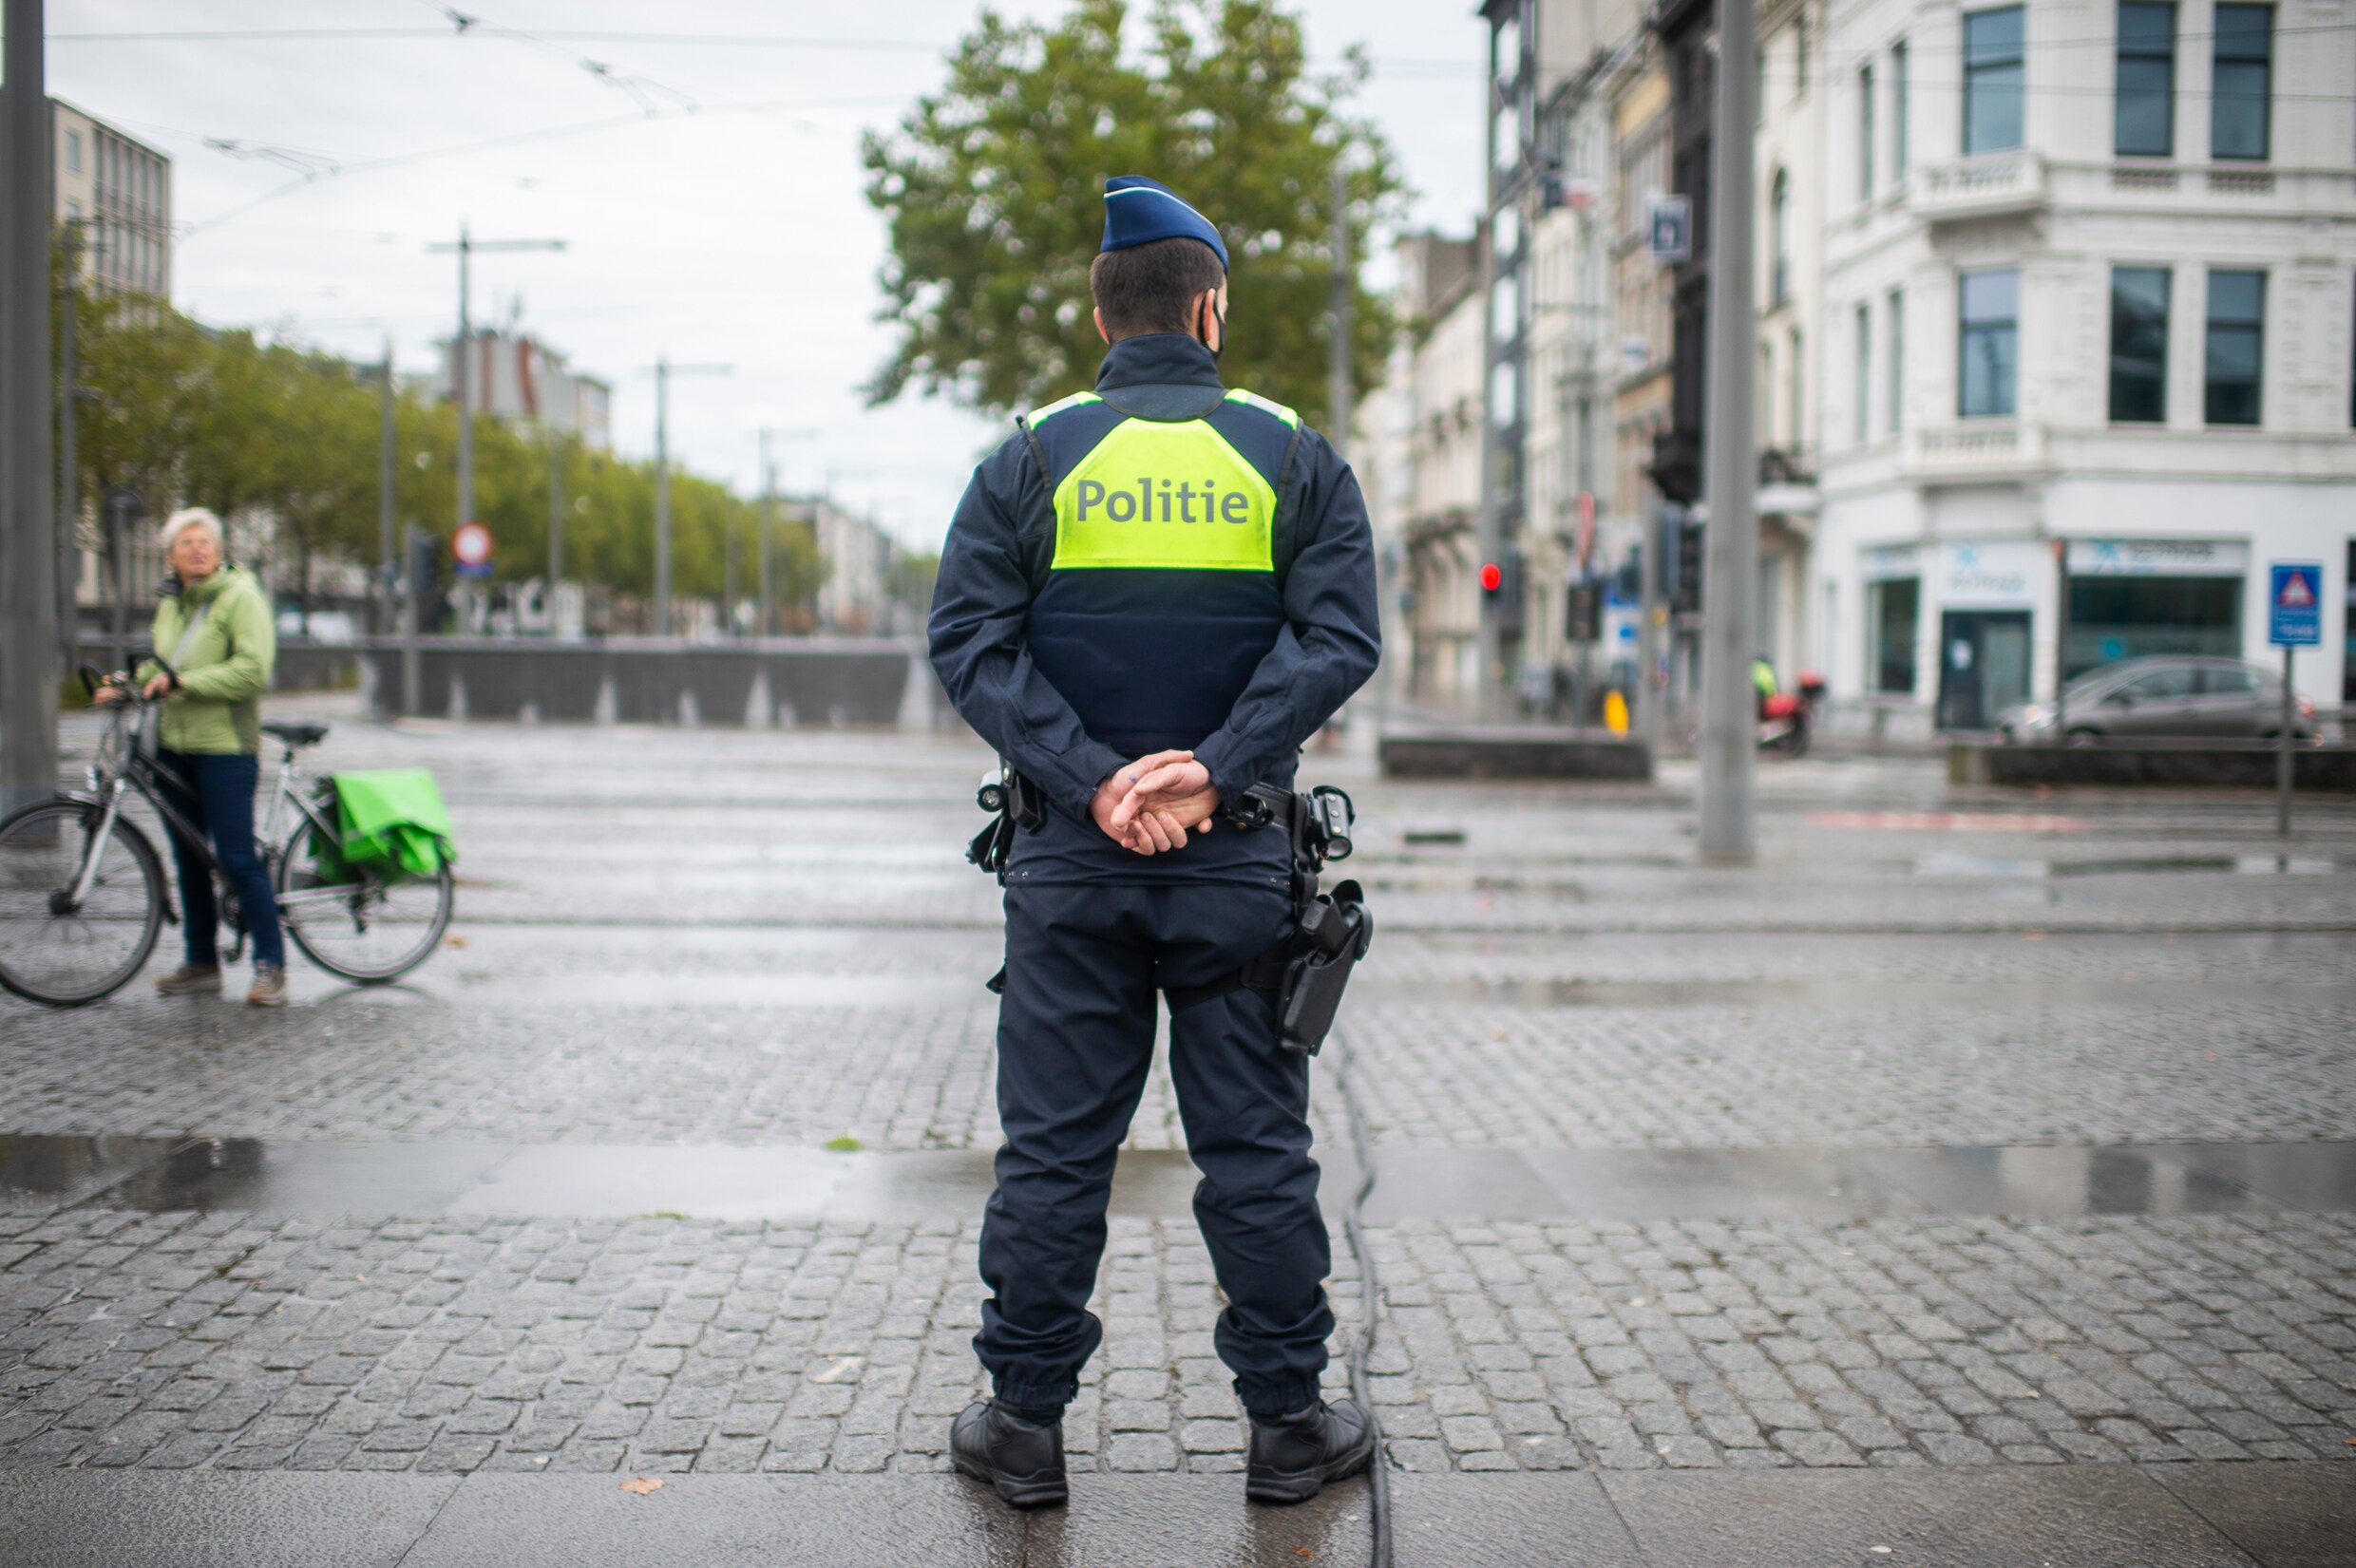 Parket onderzoekt politiegeweld in Antwerpen. Jongeren getuigen: ‘Ja, op dat moment dacht ik dat hij dood was’